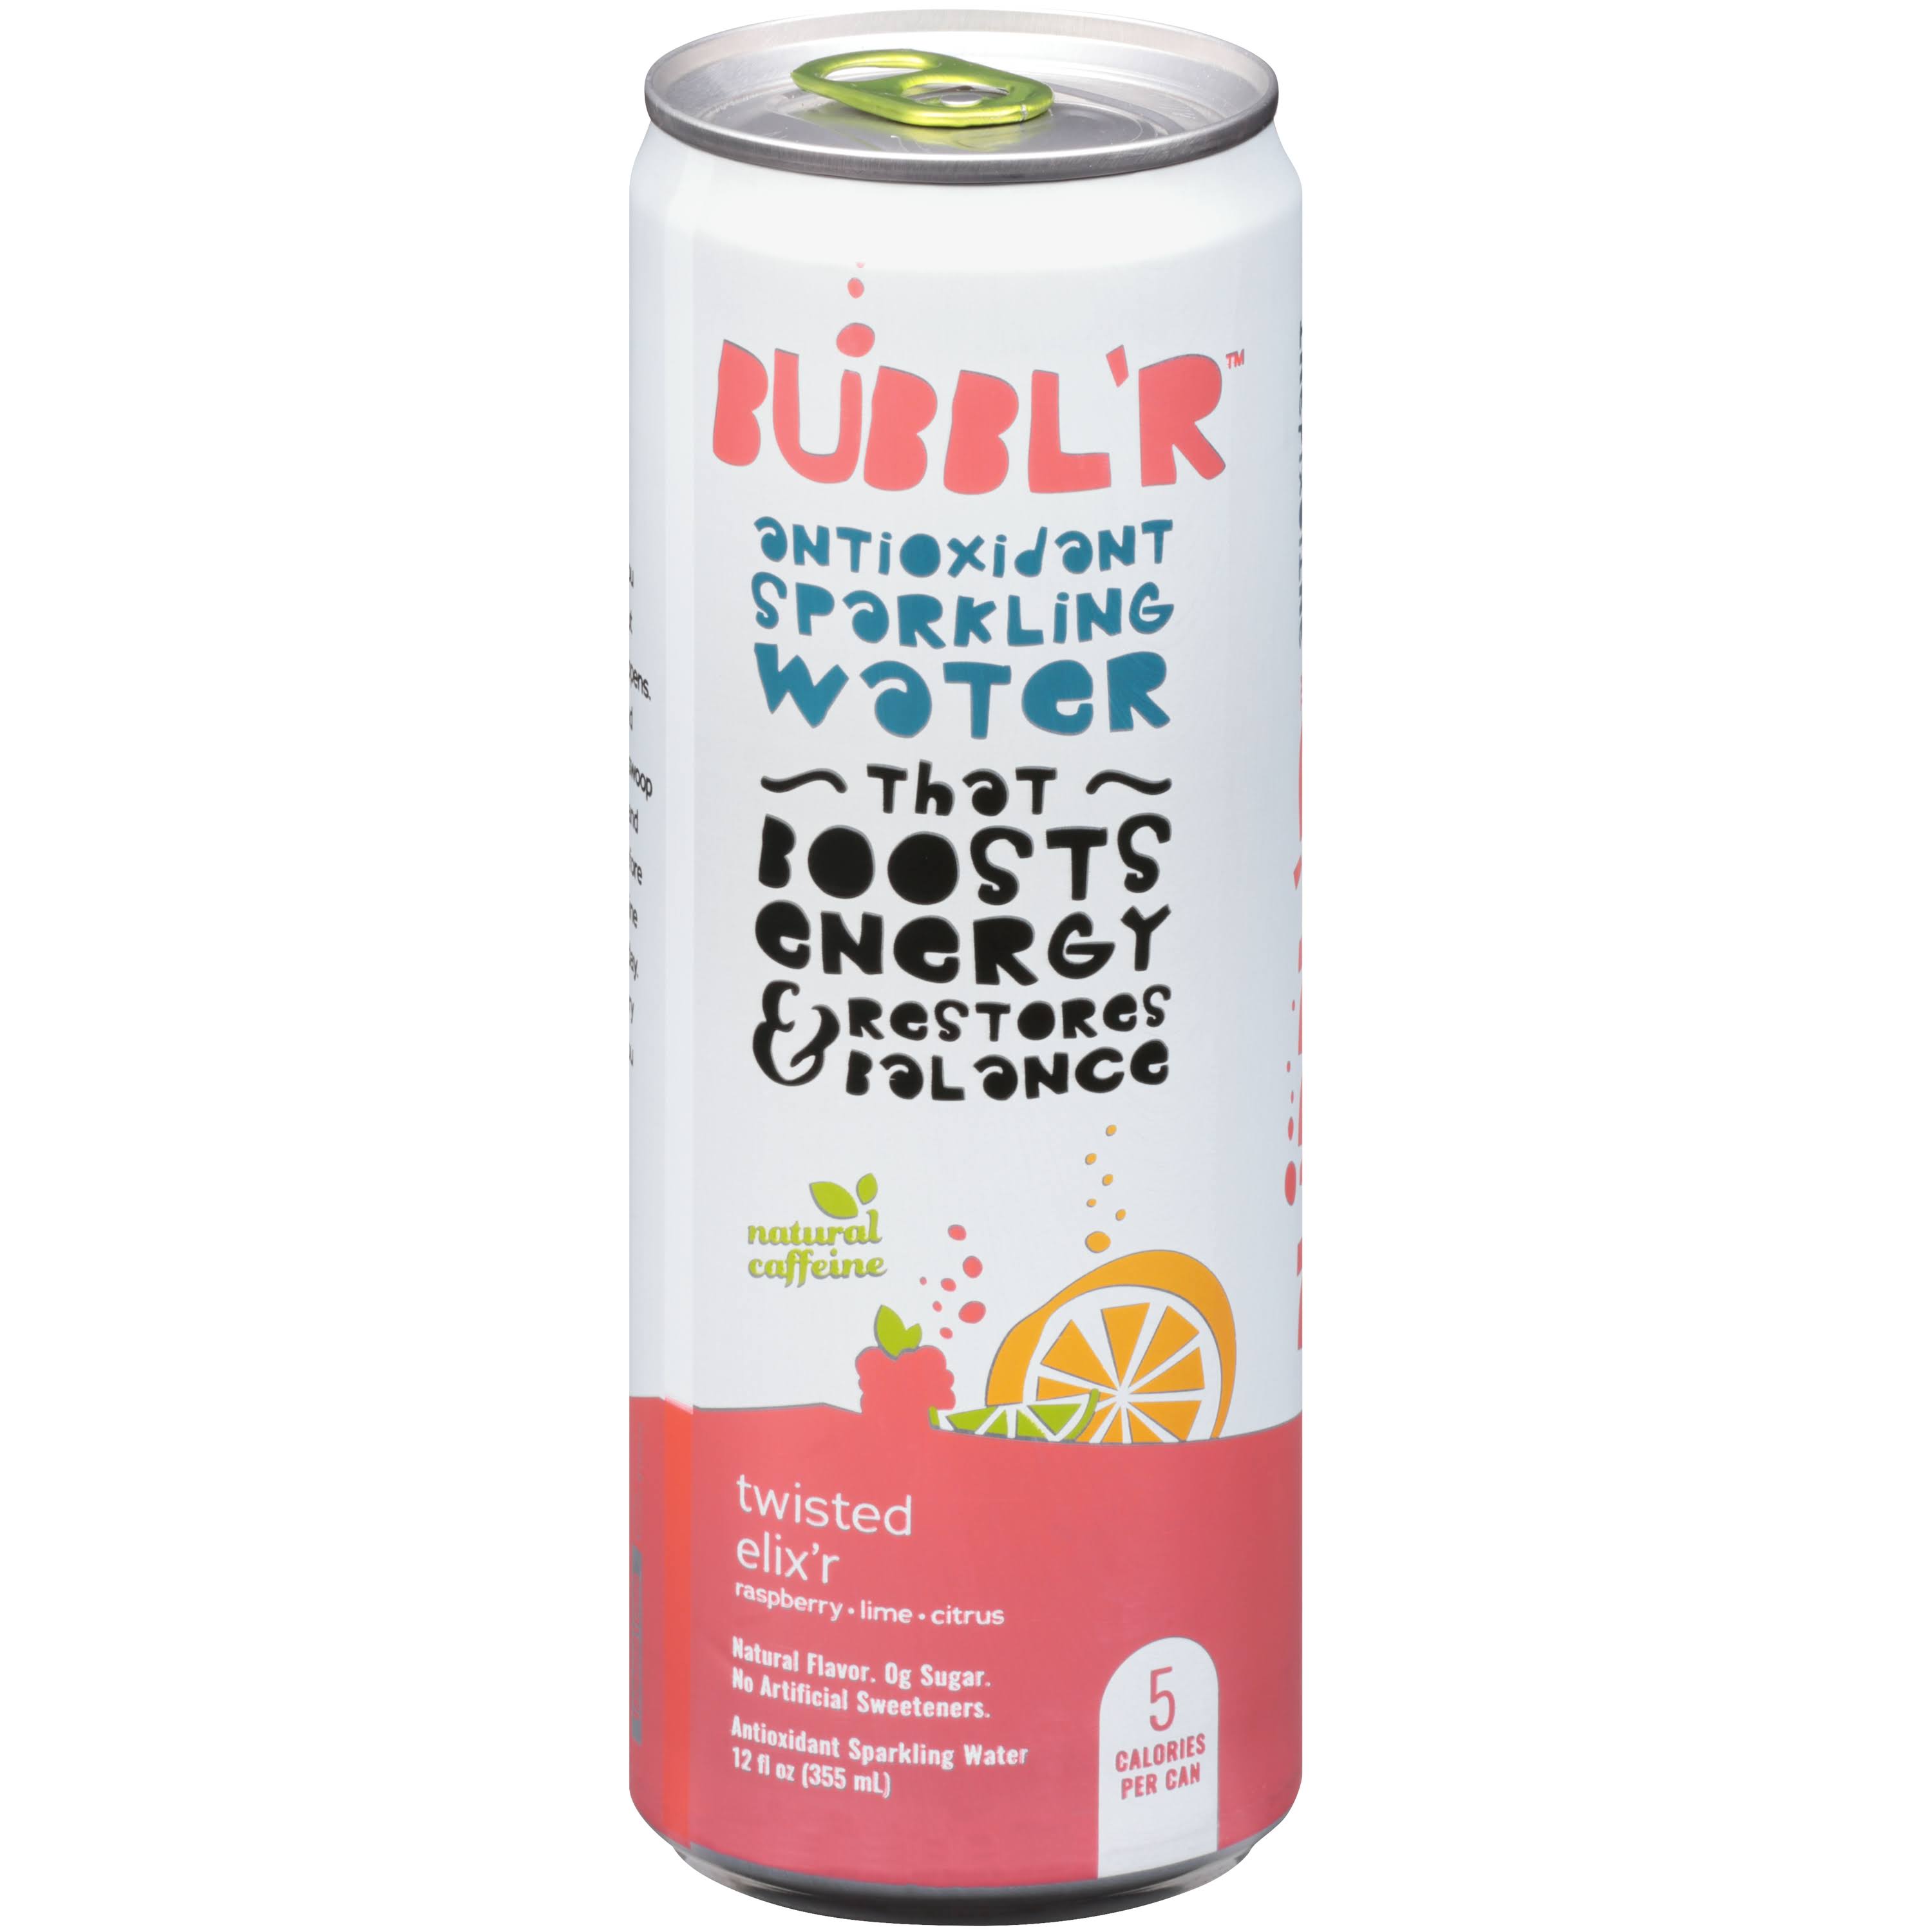 Bubblr Sparkling Water, Antioxidant, Twisted Elix'r - 12 fl oz